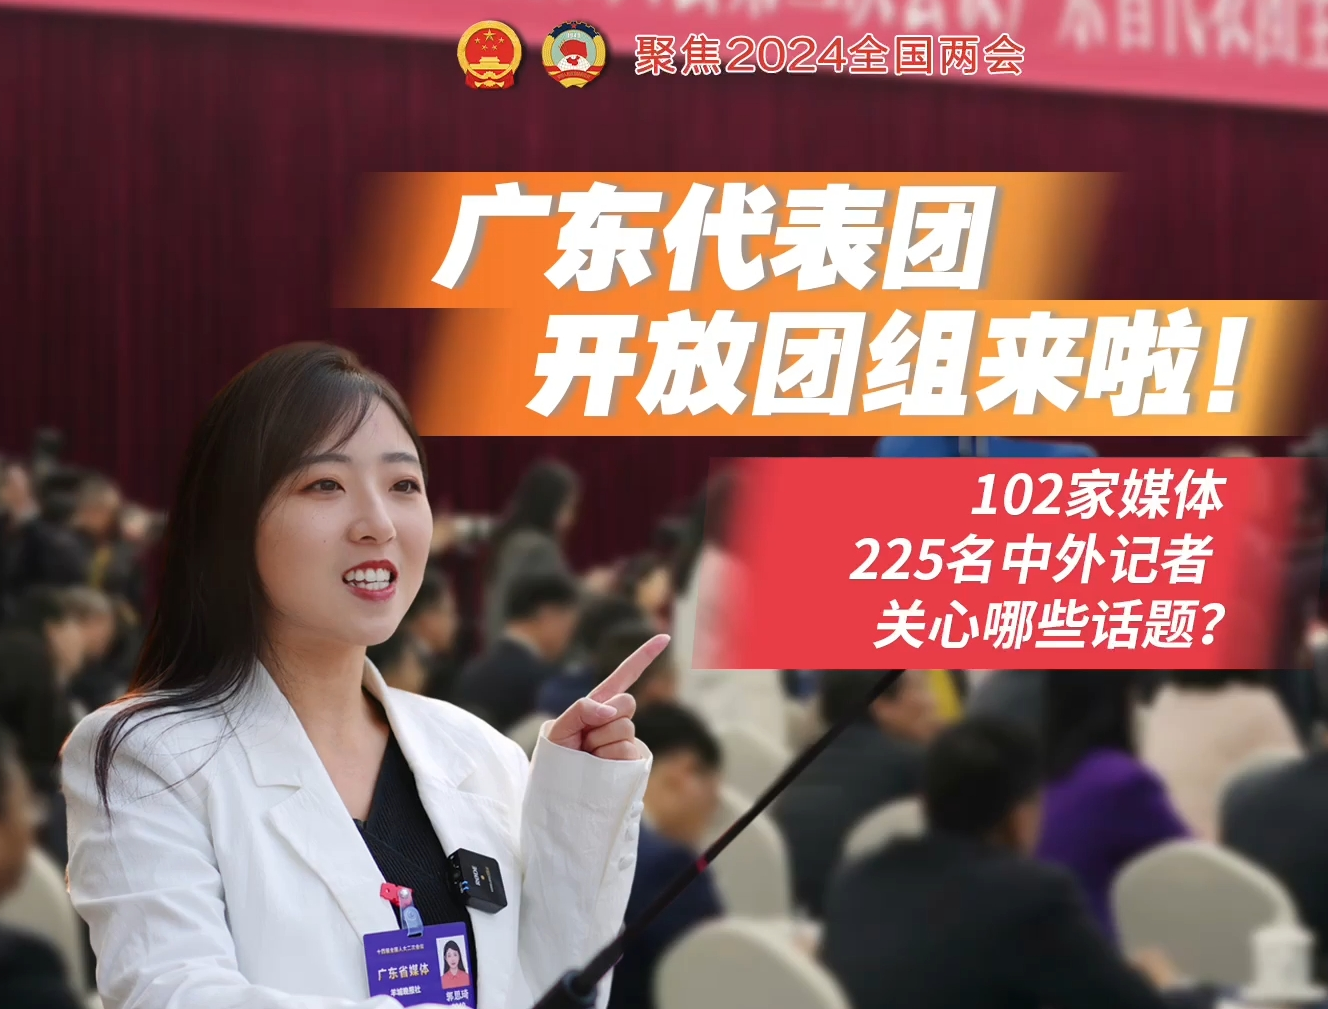  【Vlog】记者两会日记｜广东代表团开放团组来啦！200余名中外记者关心啥话题？